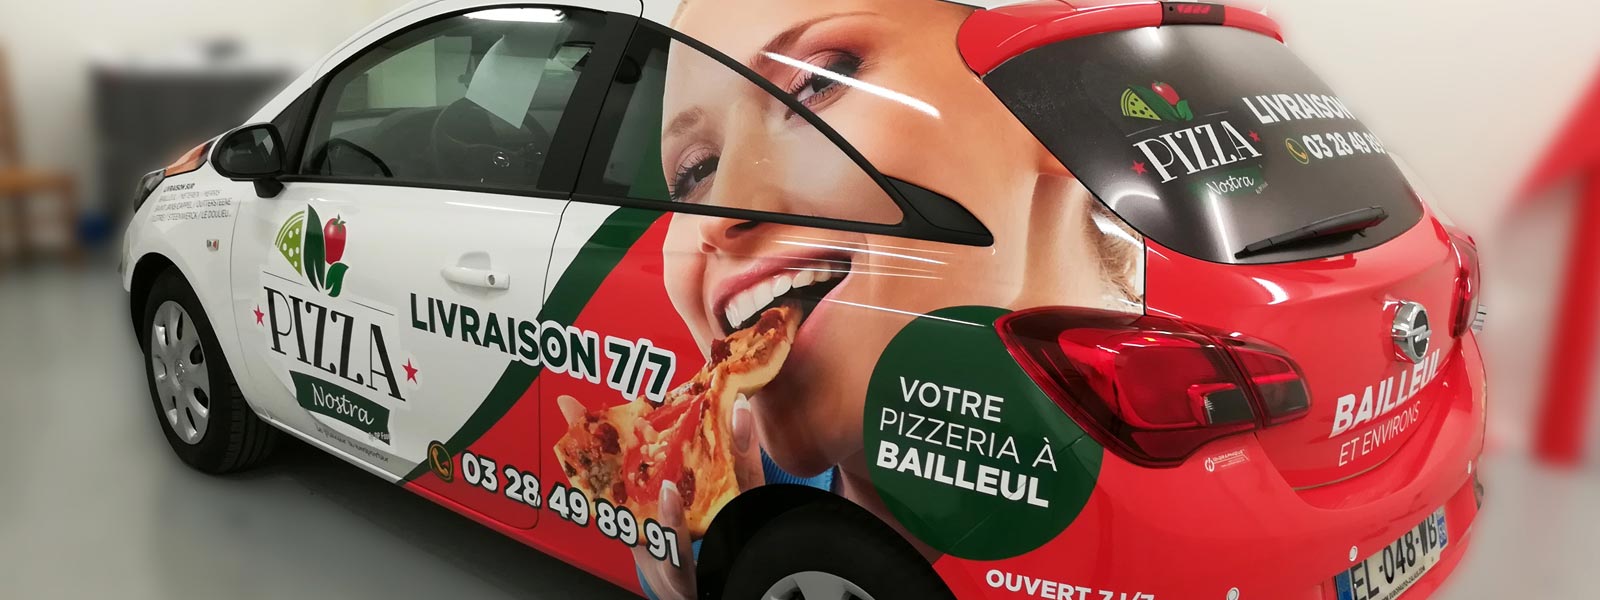 lettrage véhicule publicitaire pizzeria